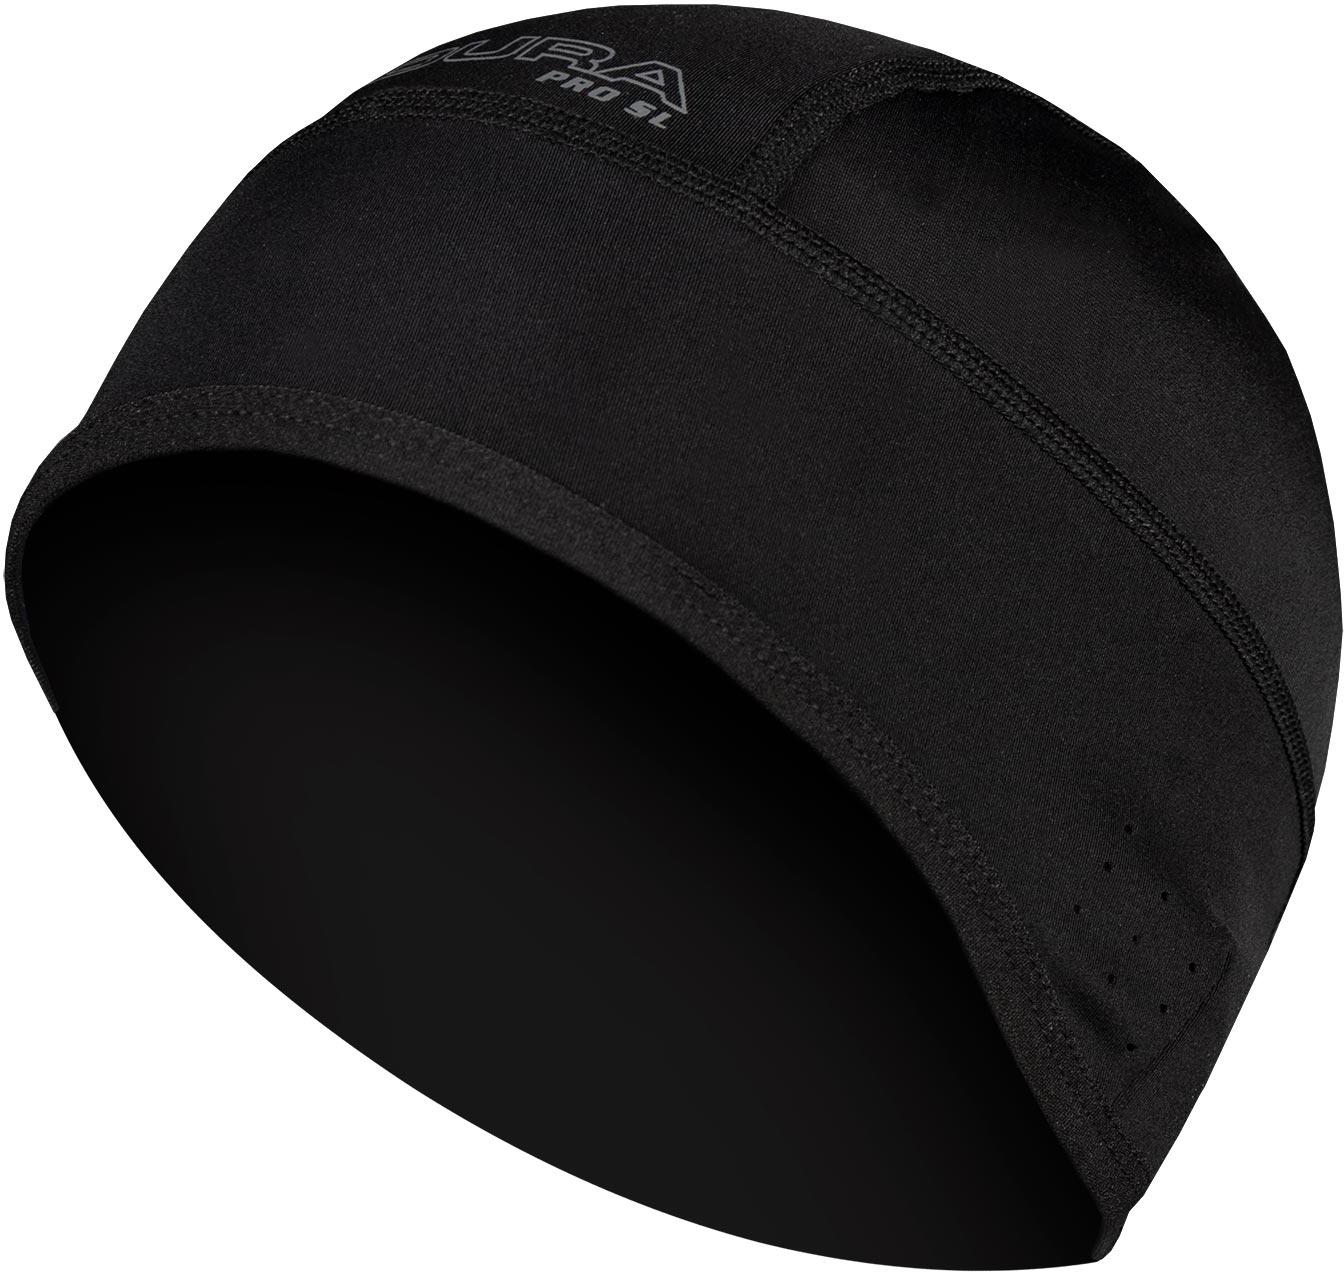 Endura Pro Sl Skull Cap - Black